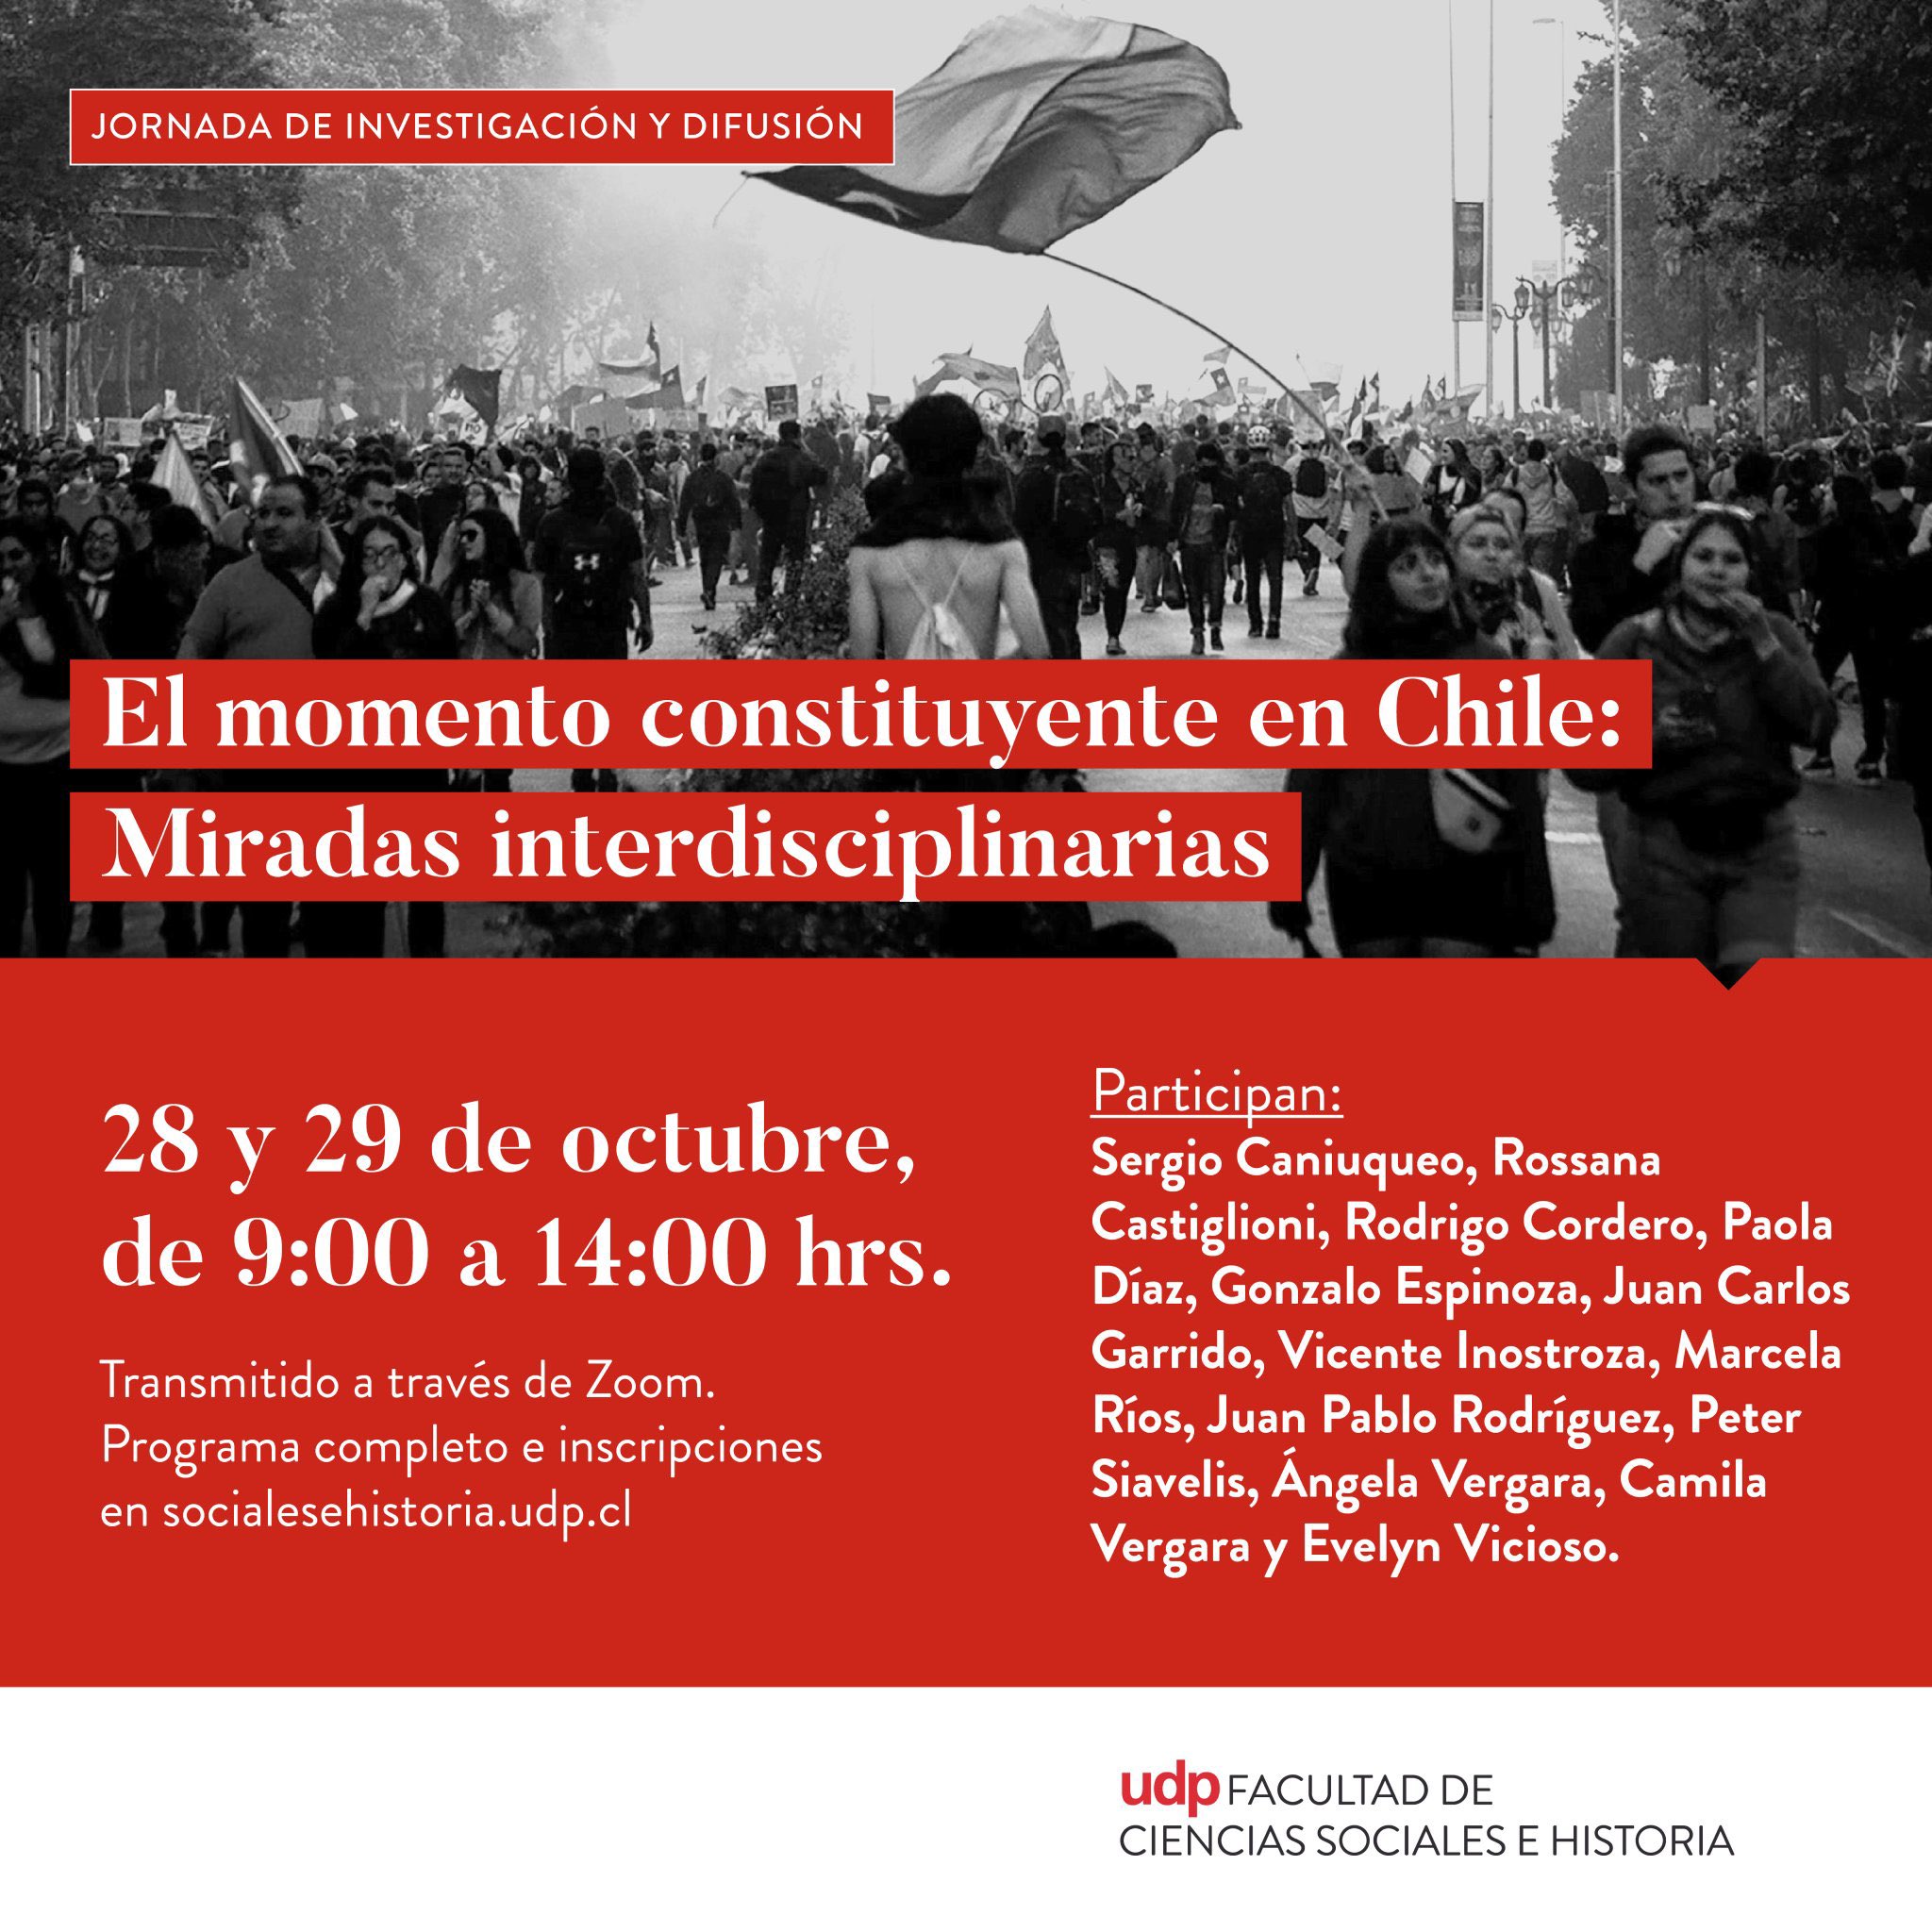 Universidad Diego Portales invita a la jornada de investigación y difusión: “El momento constituyente en Chile”